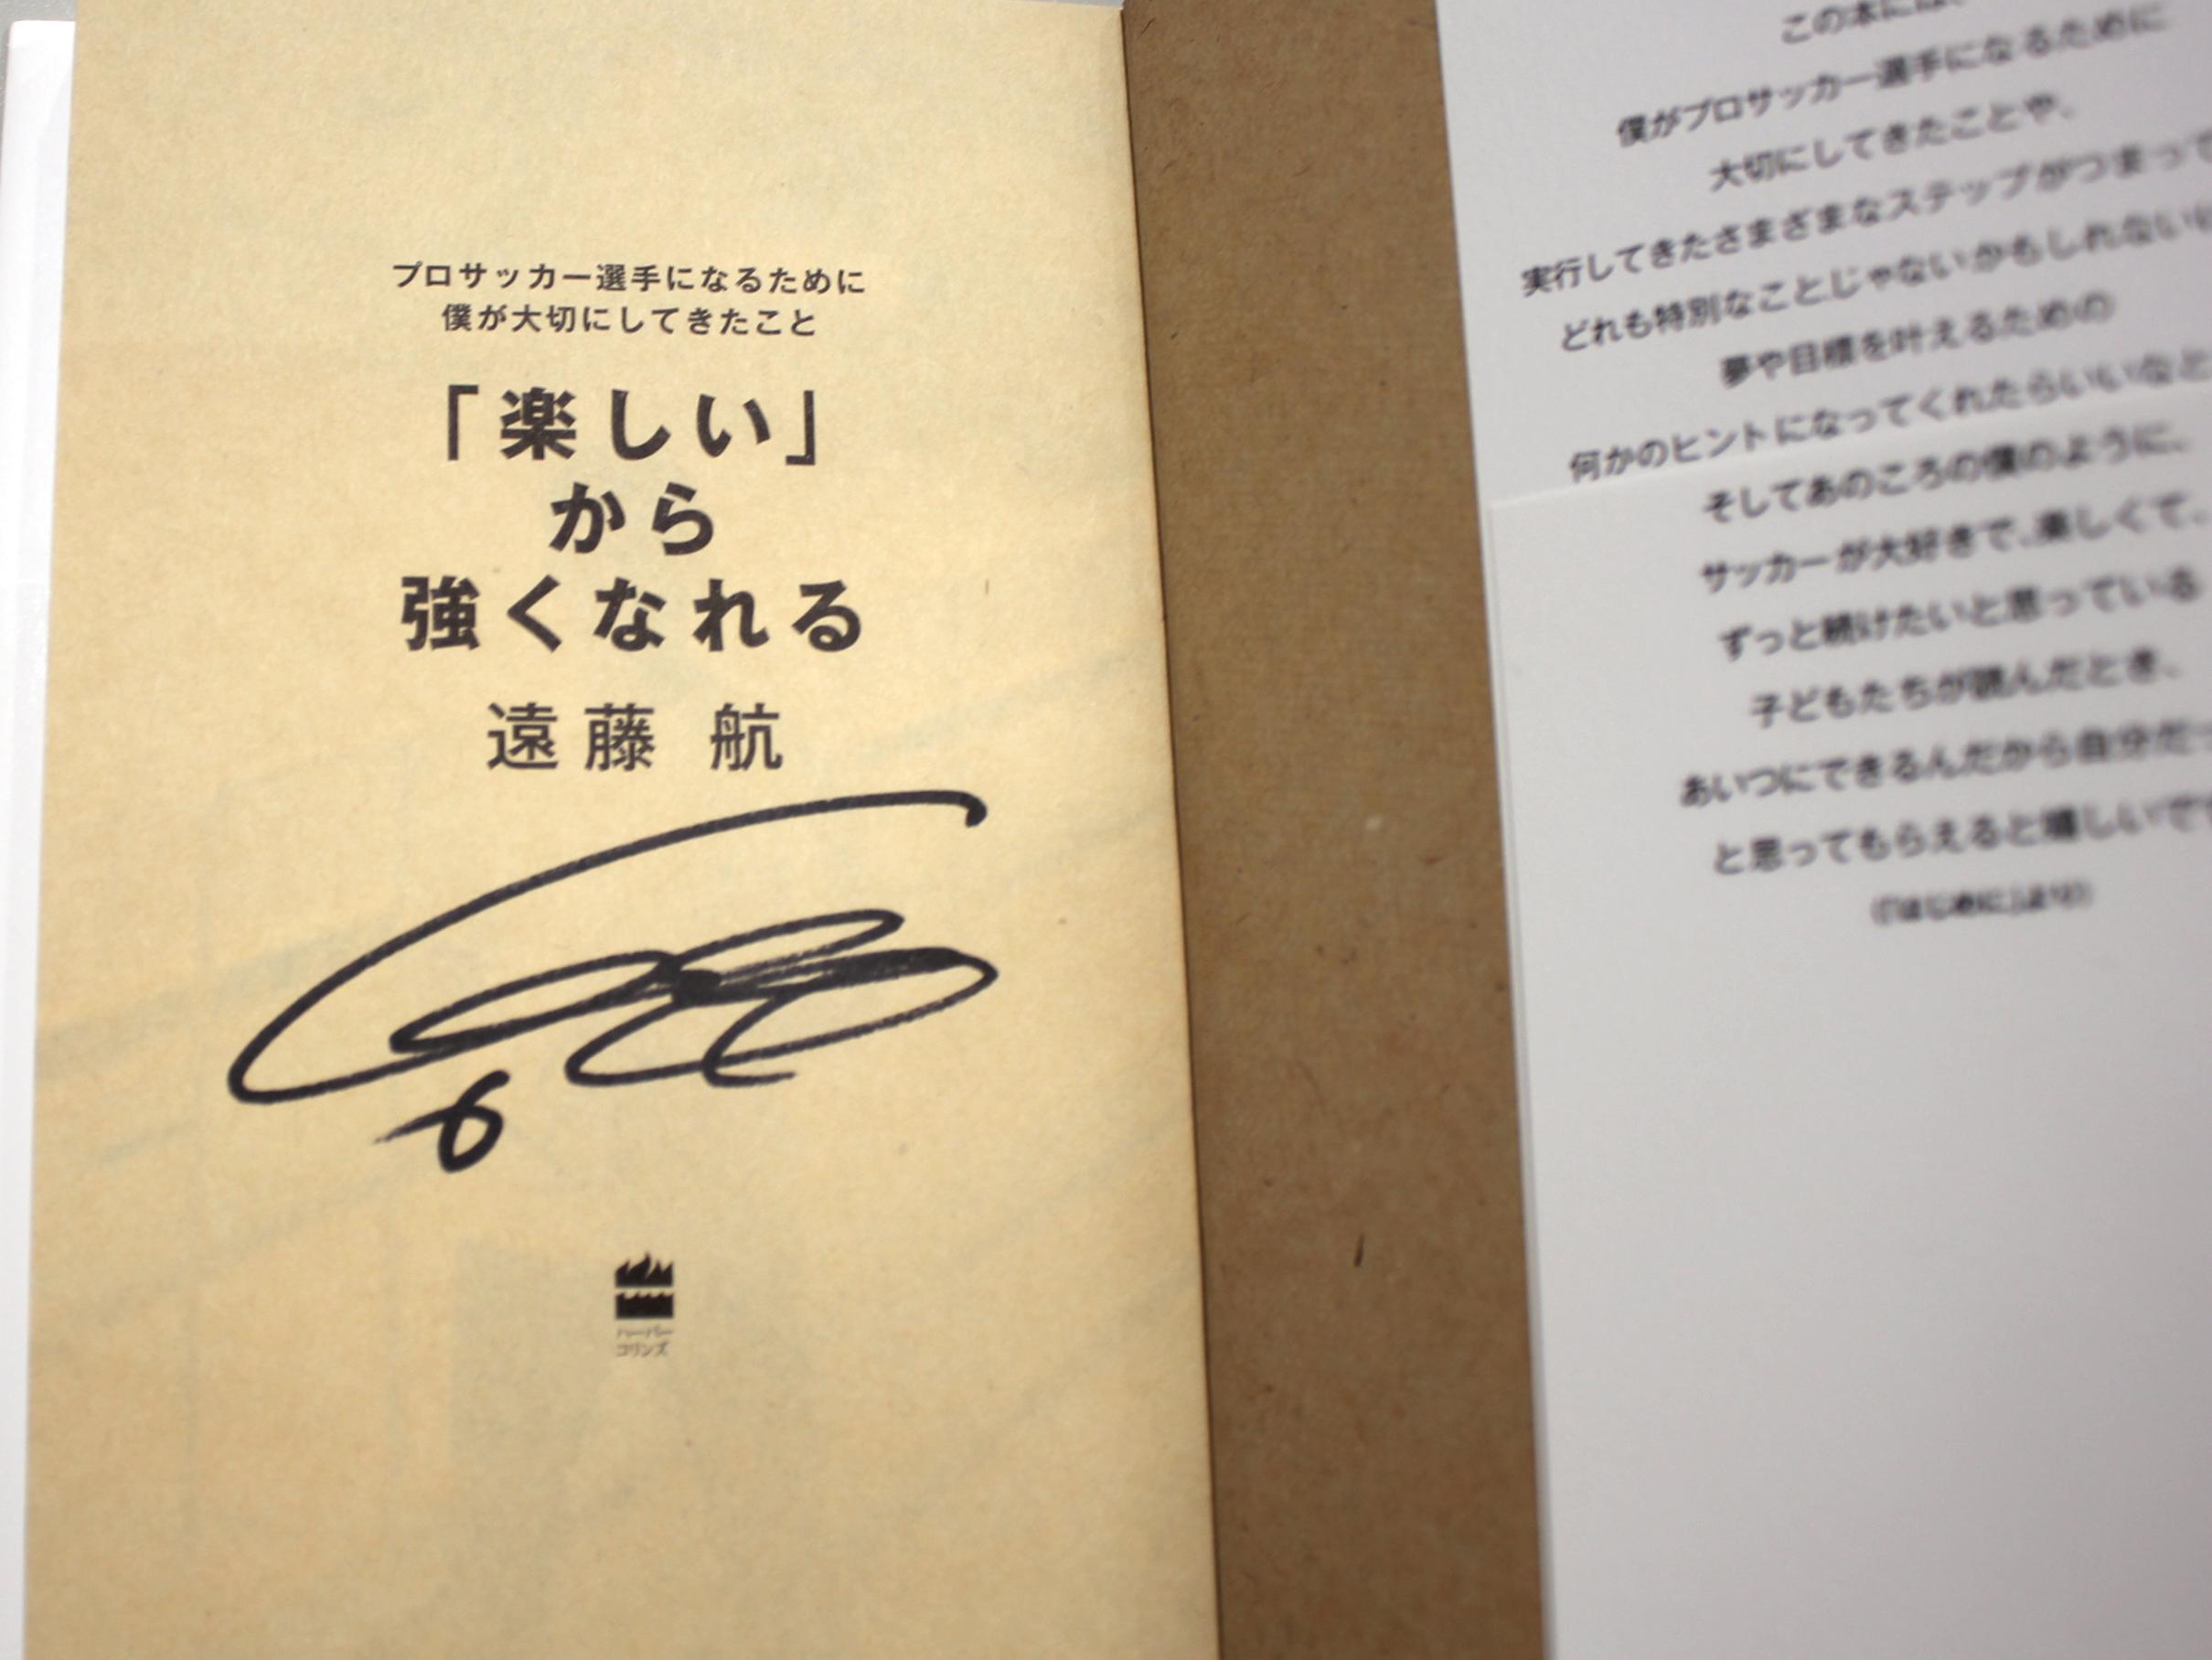 楽しい から強くなれる 日本代表遠藤航が大切にしてきたこと サイン入り書籍プレゼント サカイク